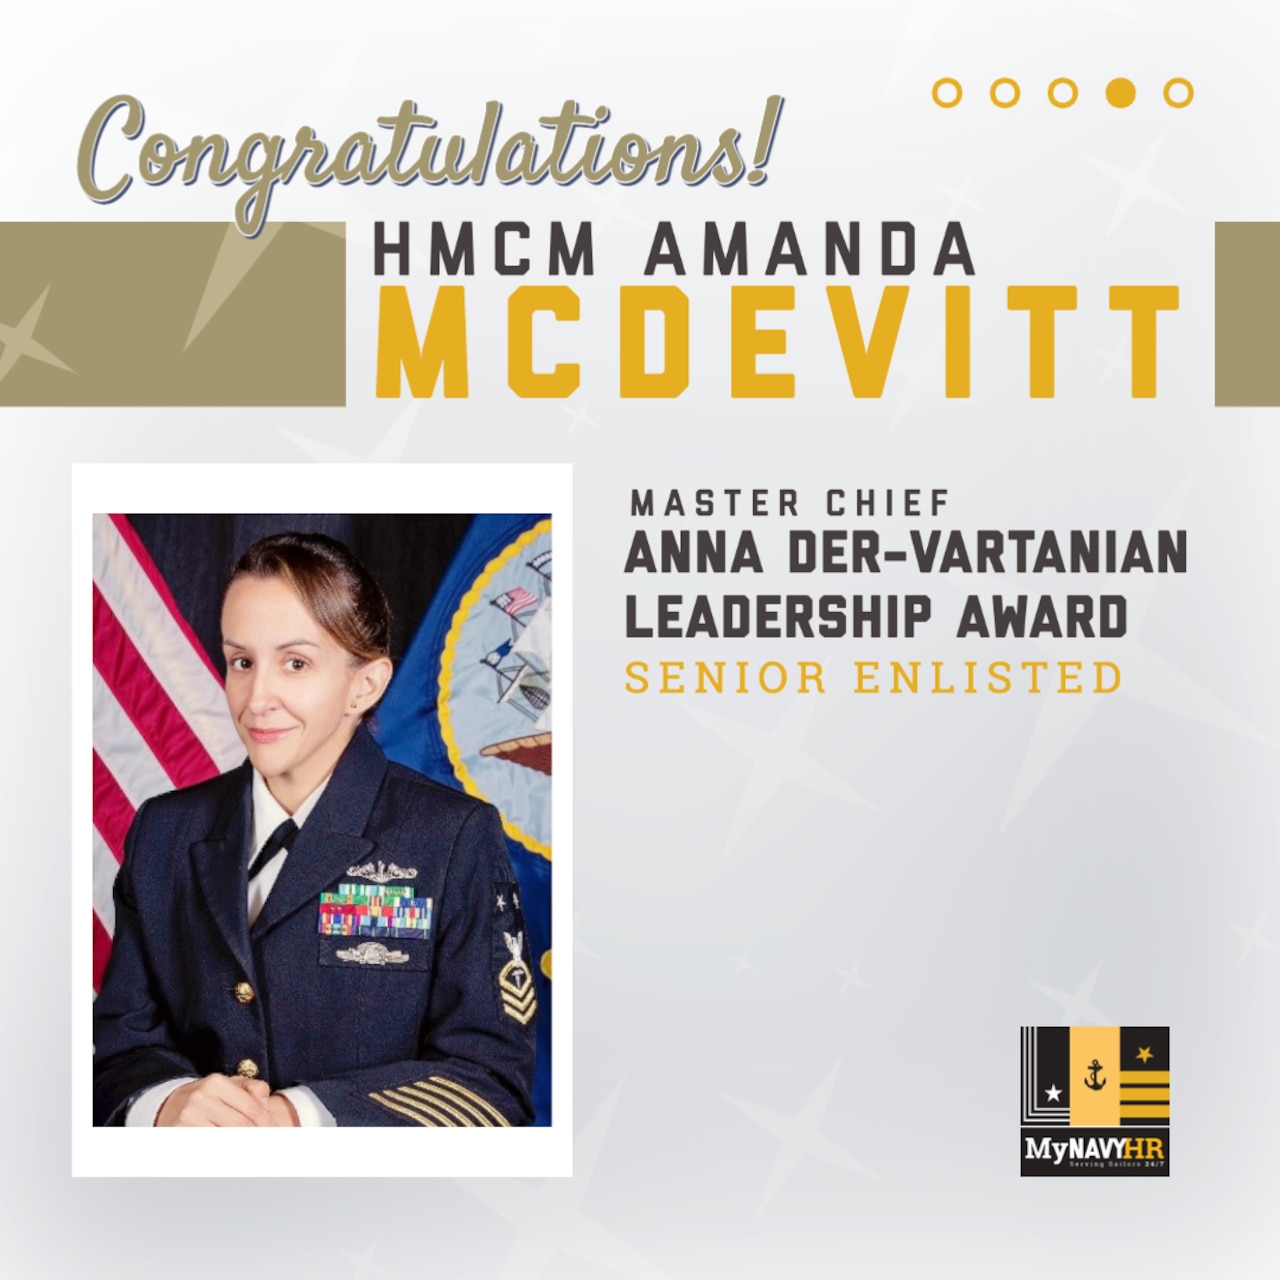 social media graphic highlighting Graphic for social media highlighting the 2023 Master Chief Anna Der-Vartanian Leadership Award Winner, Senior Enlisted Category - HMCM Amanda McDevitt